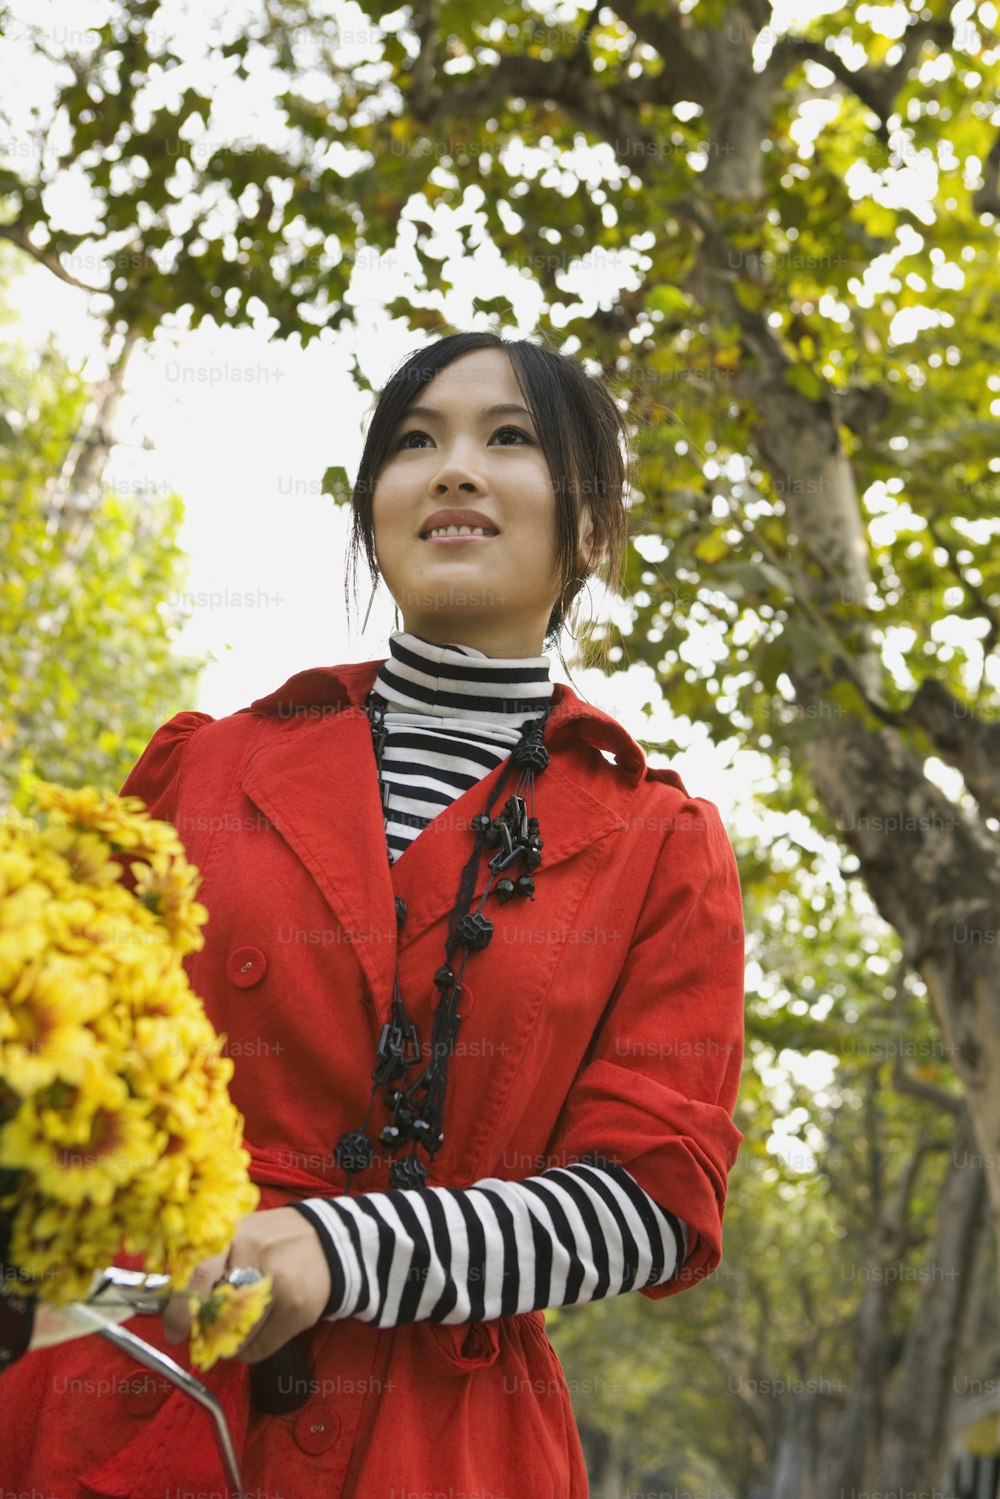 Eine Frau in einem roten Mantel, die einen Blumenkorb hält